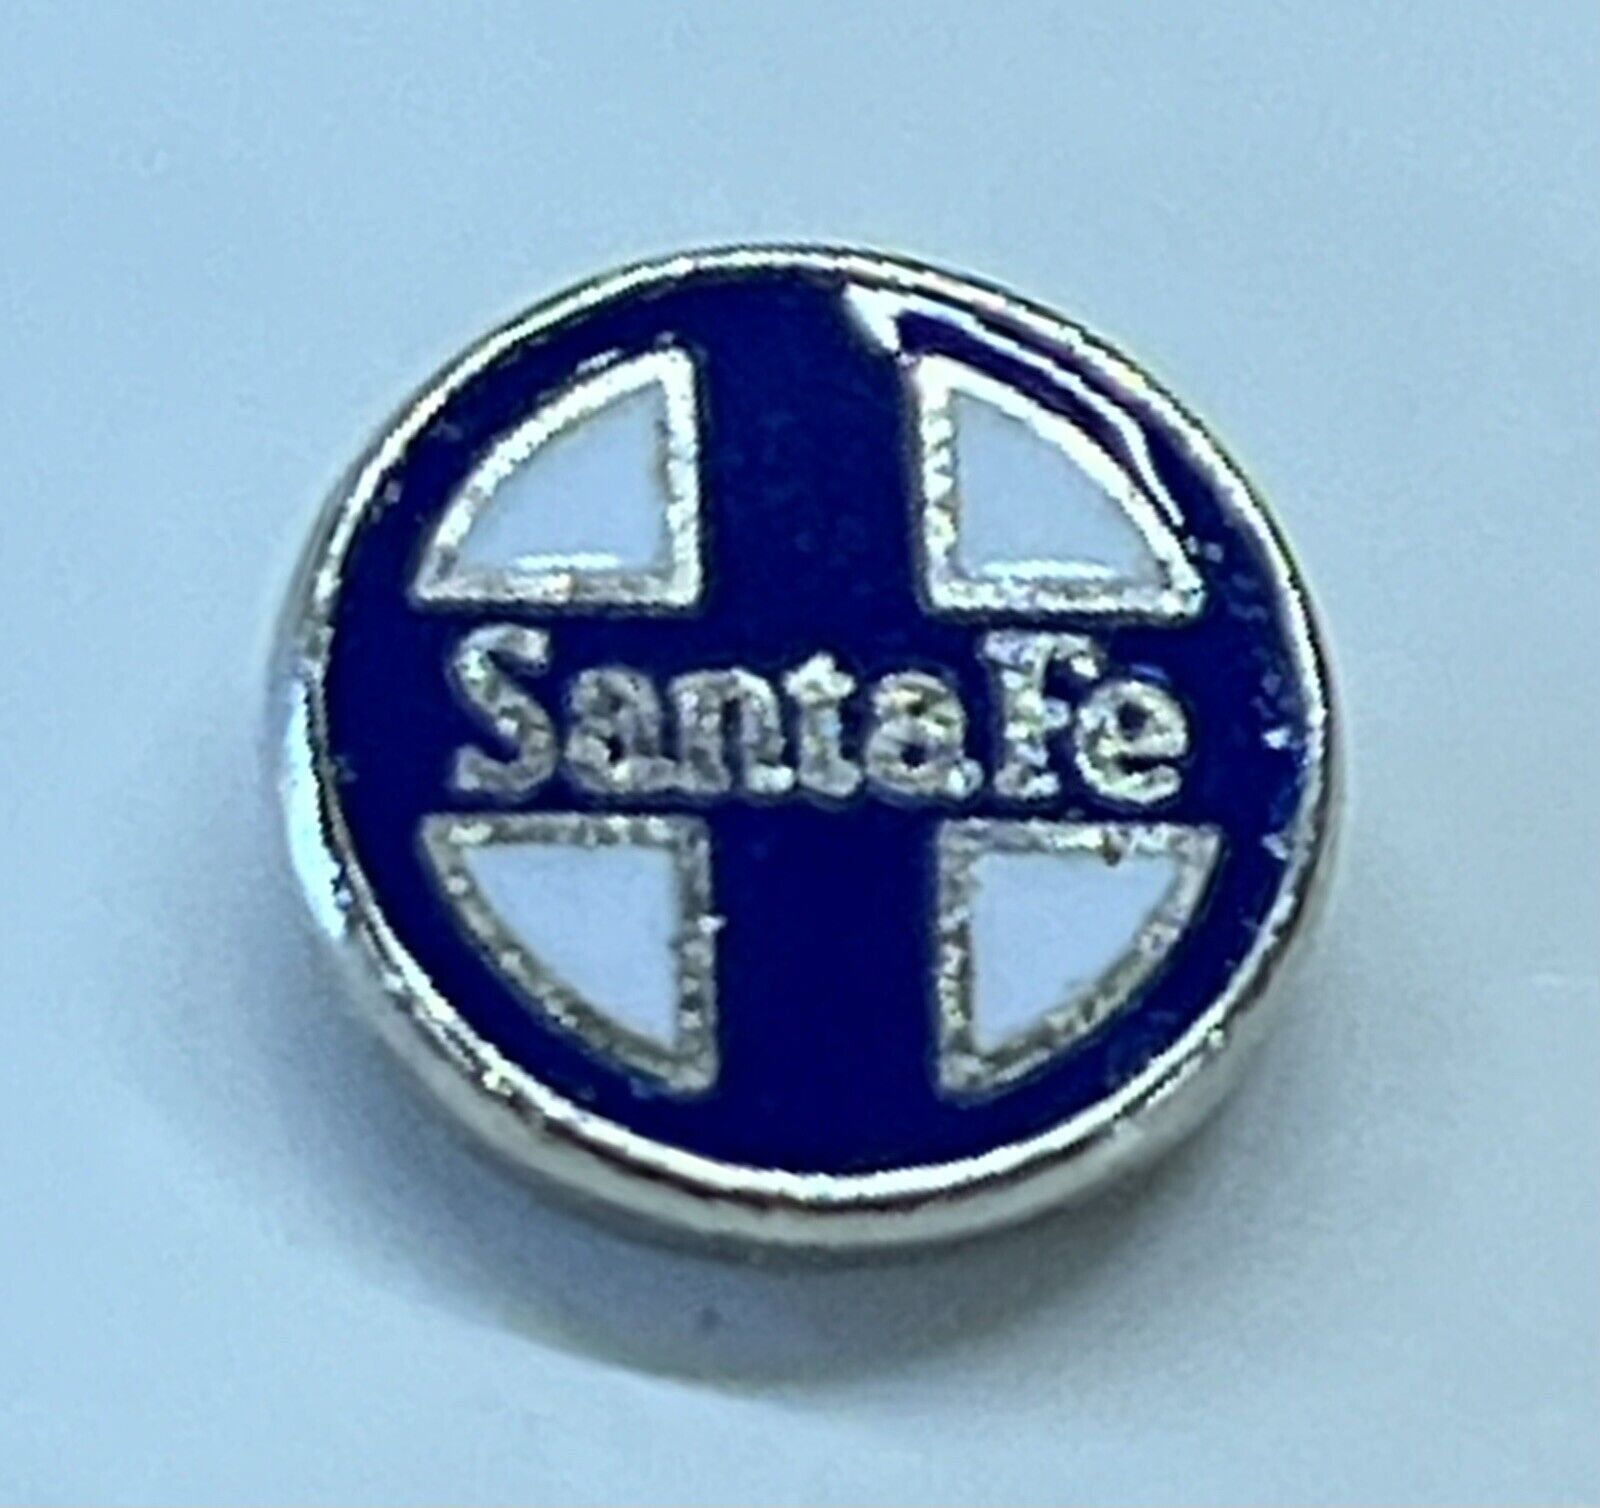 Santa Fe Railroad Pin/Tie Tac NOS Vintage